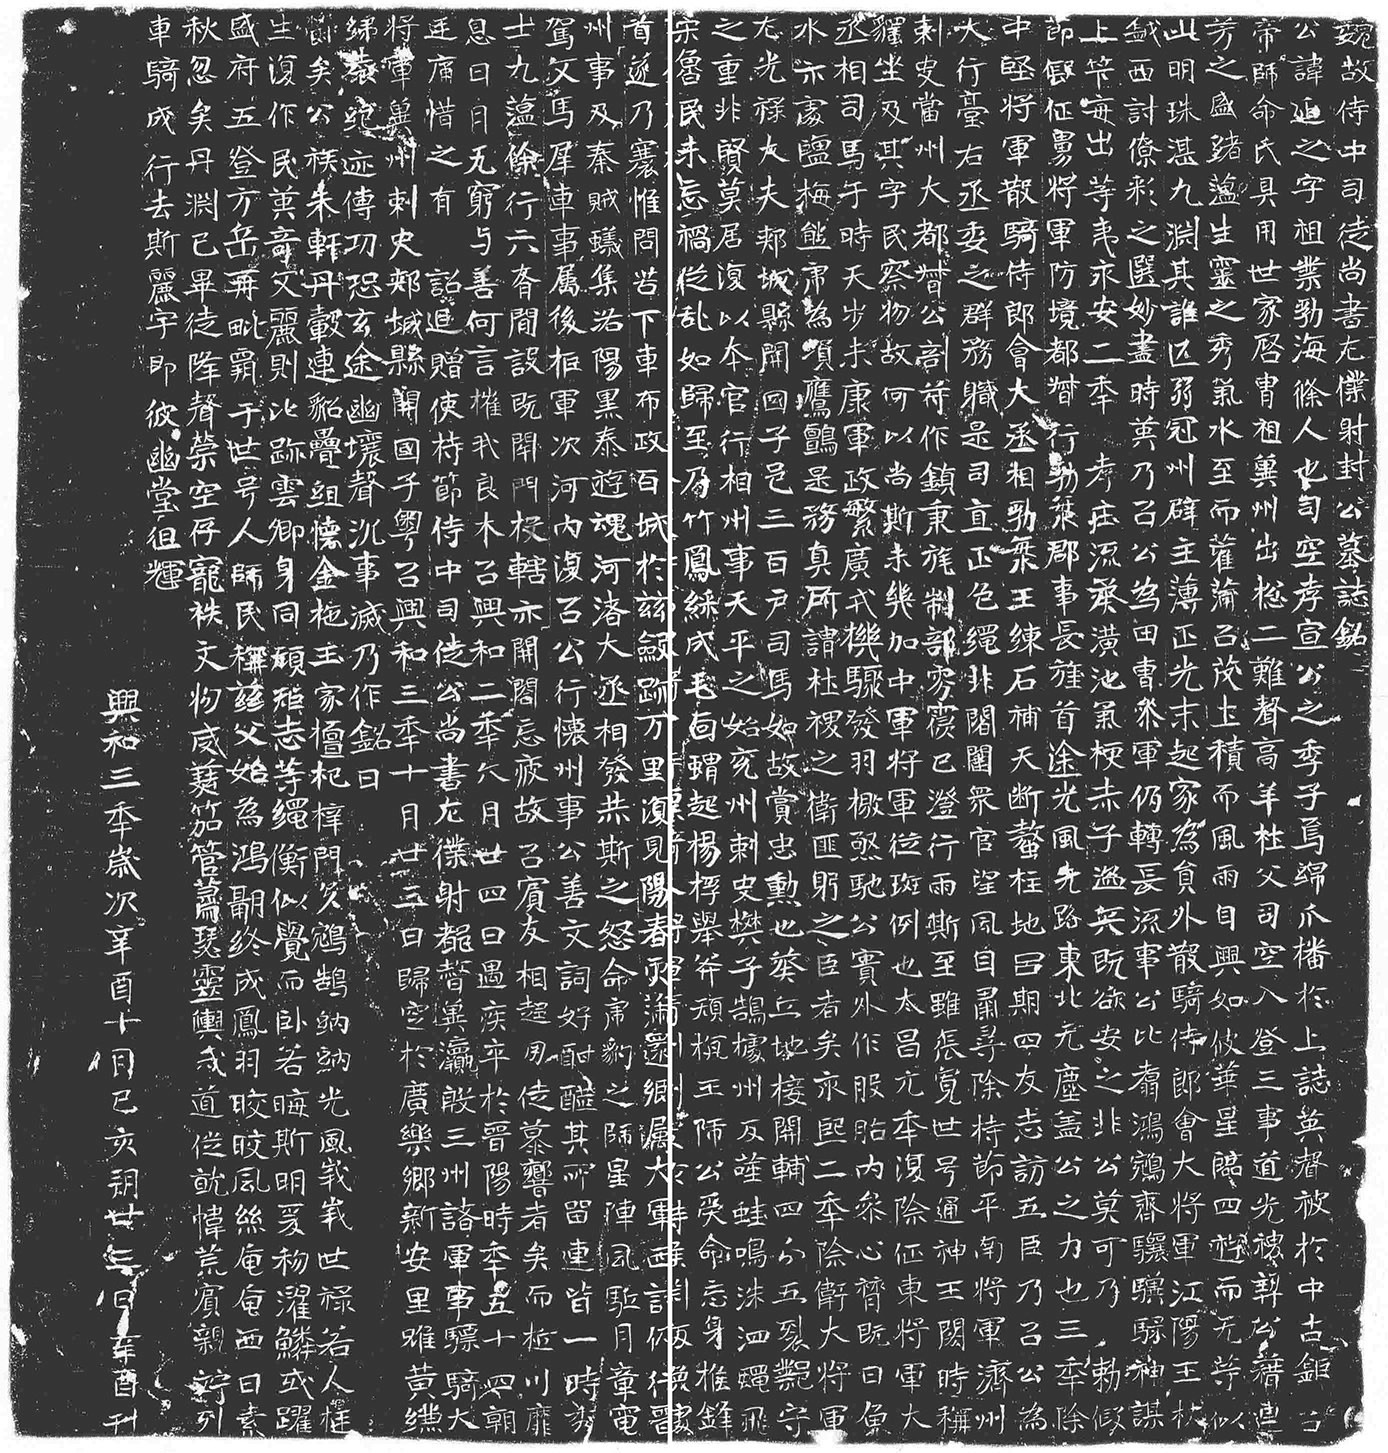 《封延之墓志》刻于东魏孝静帝兴和三年（541）十月廿三日。志石高69厘米，宽74厘米，志盖边长57厘米。